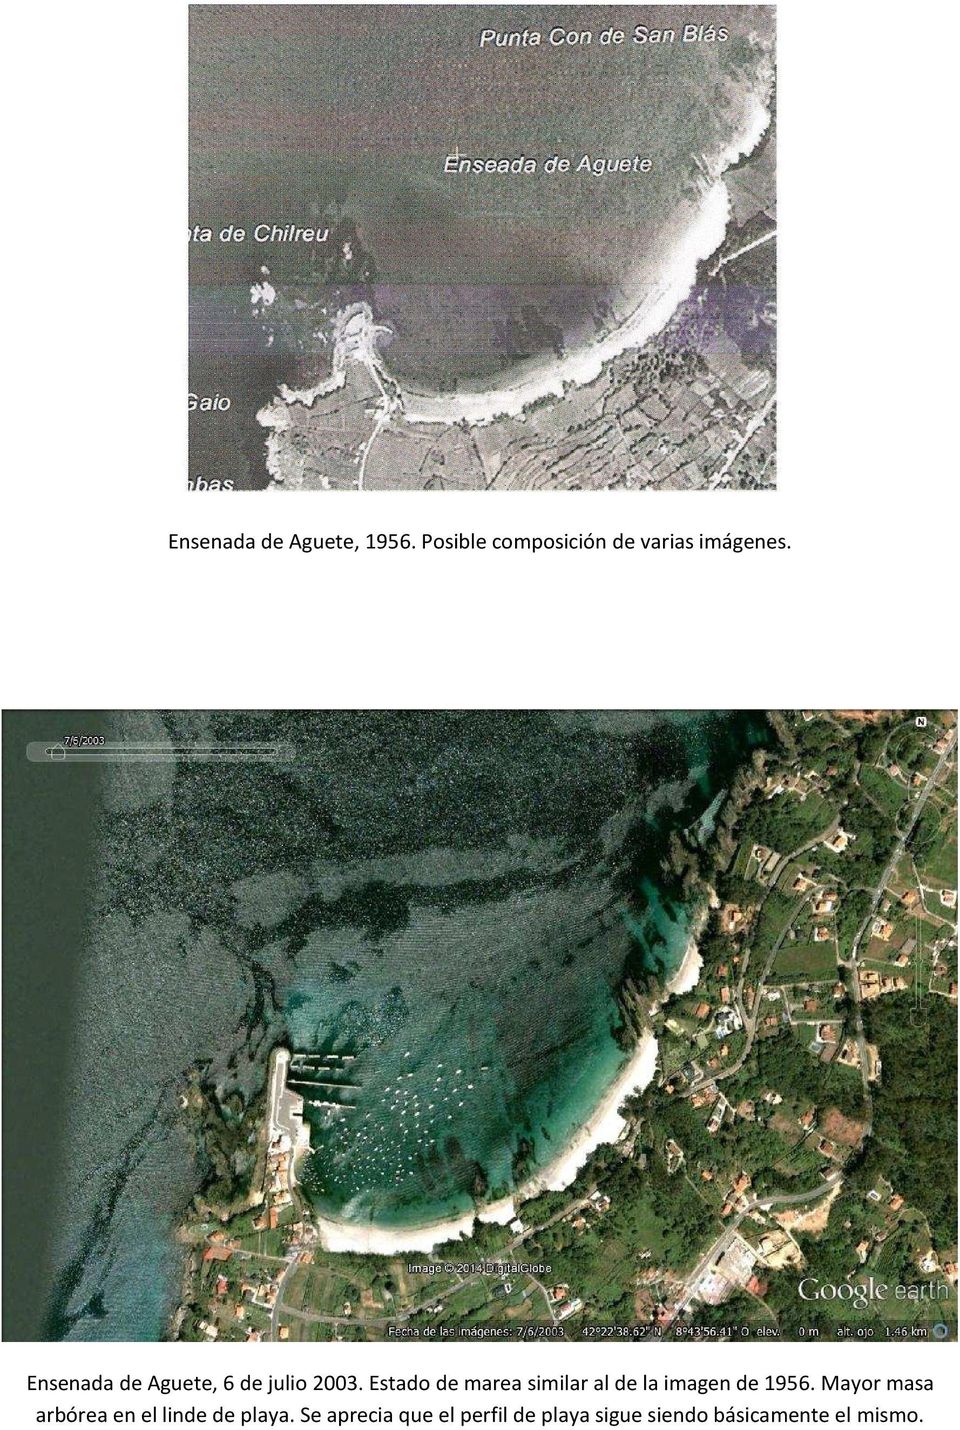 Estado de marea similar al de la imagen de 1956.